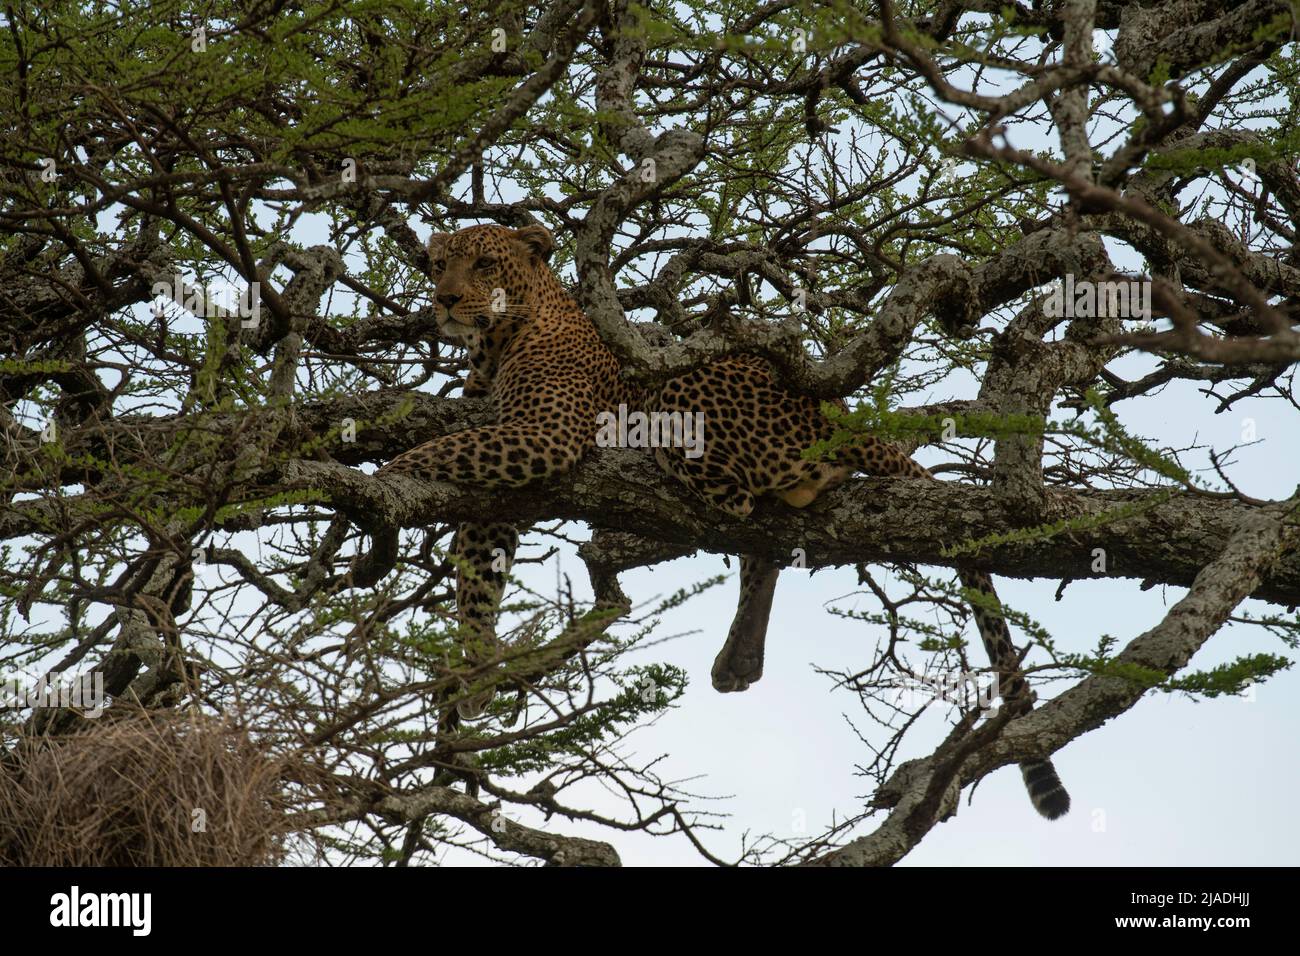 Leopard in Acacia Tree, Tanzania Stock Photo